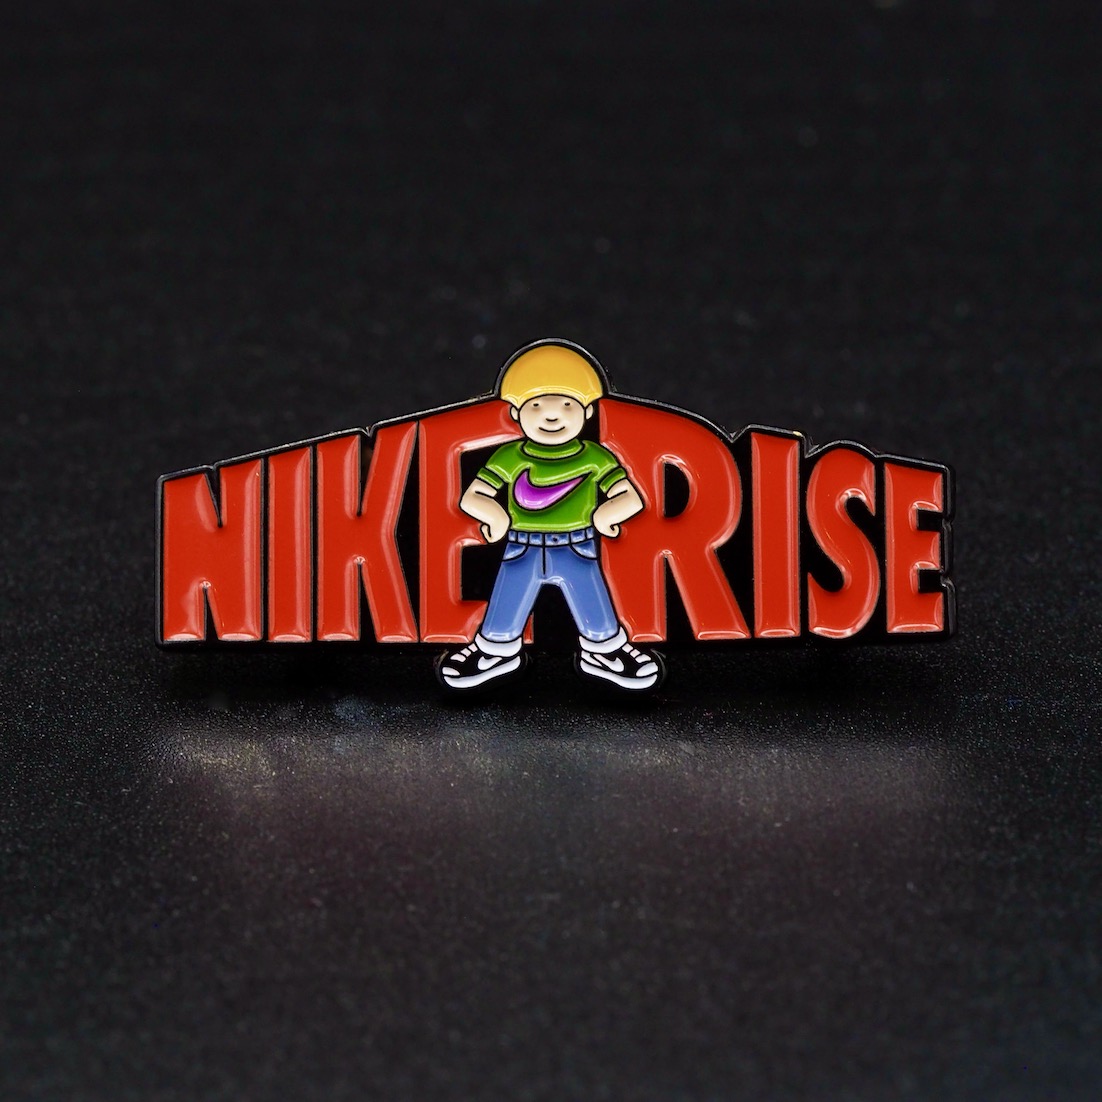 Nike Rise Pins, Speld Nike Swoosh Mannetje met Nike Sneakers en tekst